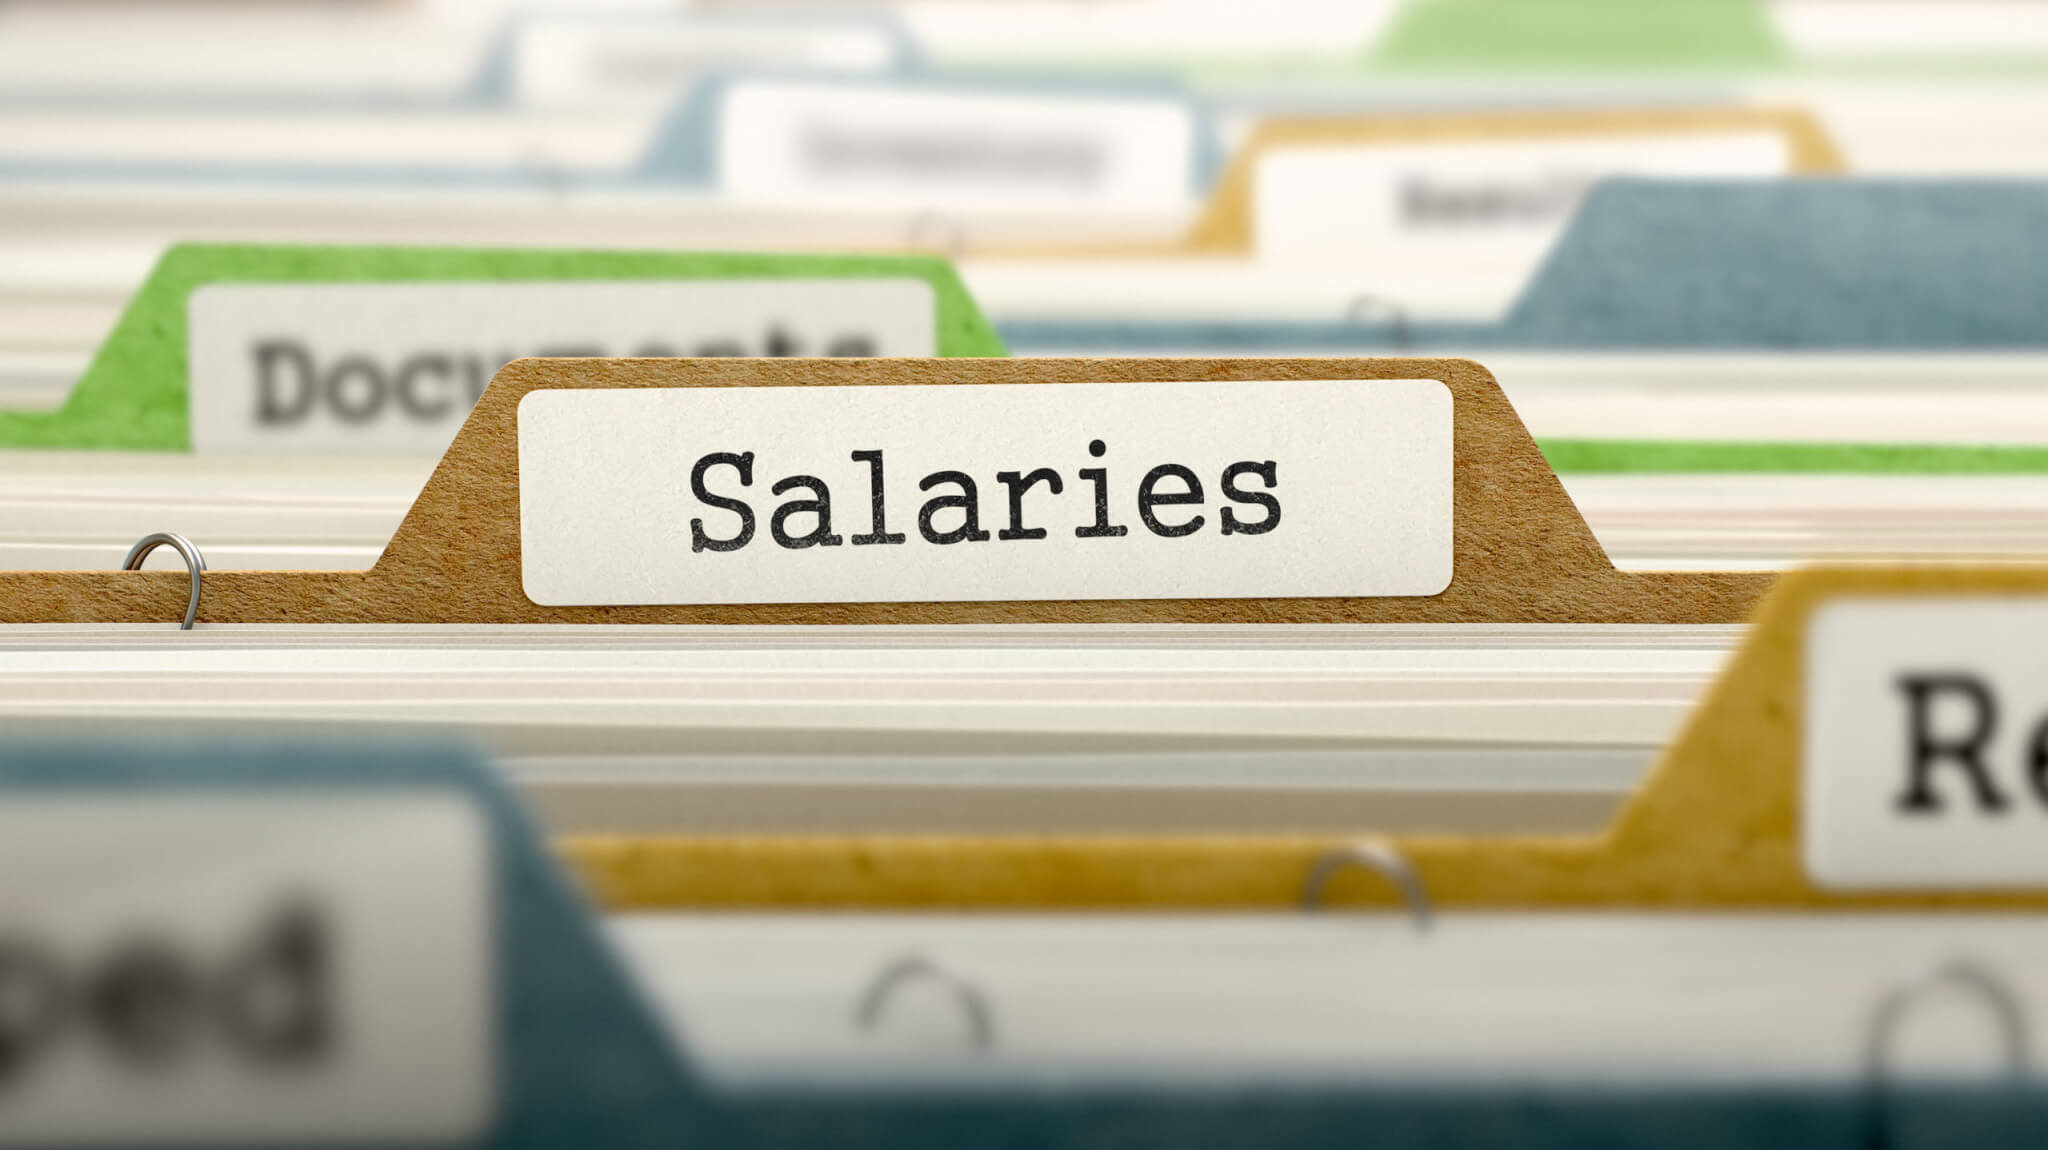 Job salaries file